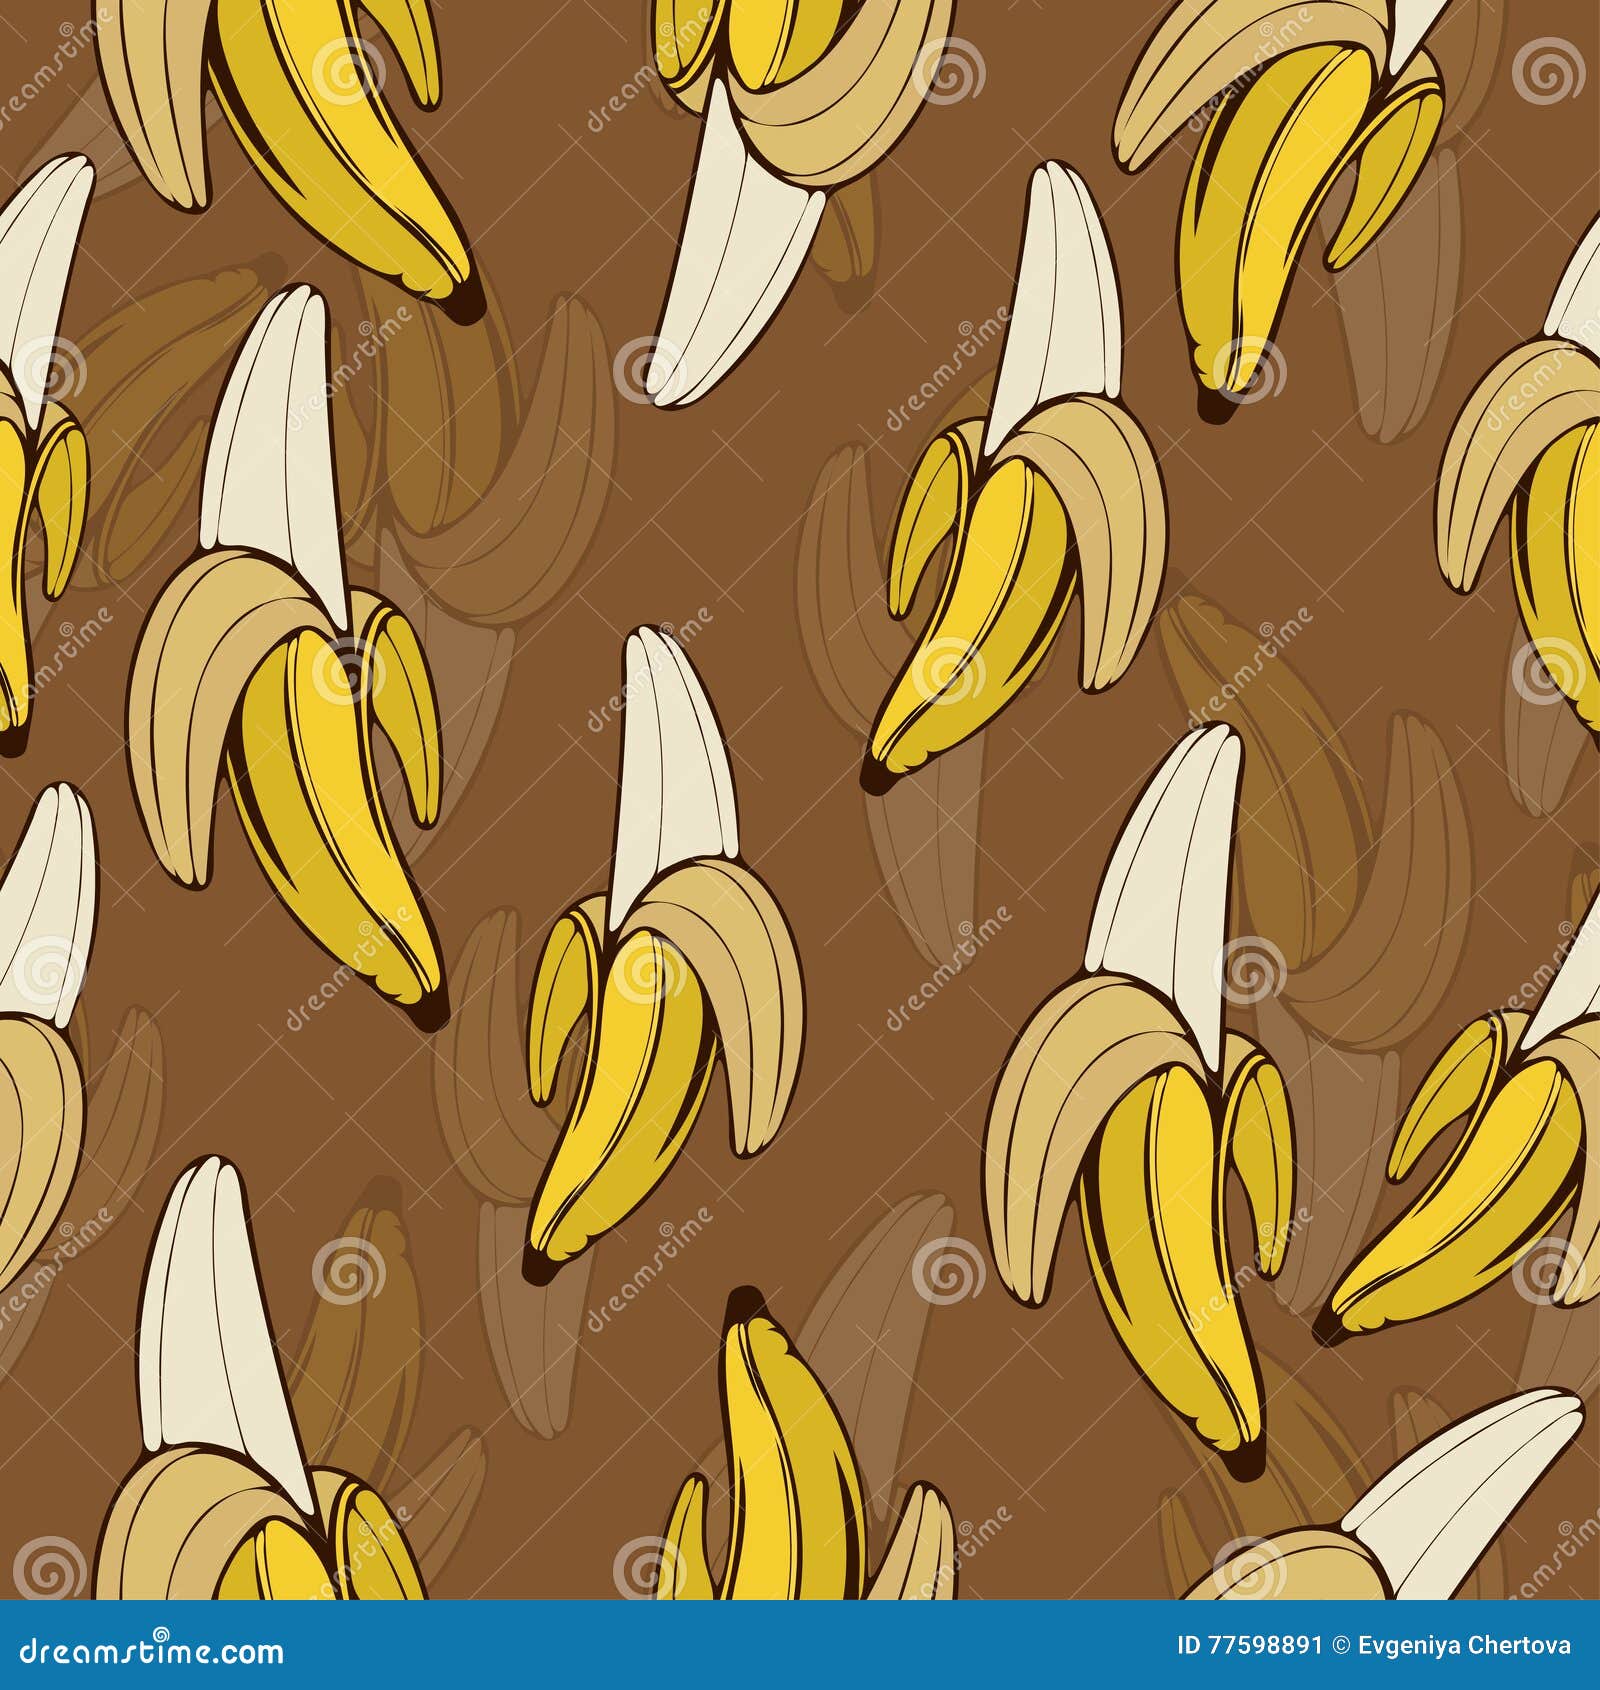 Póster Mão de banana desenho padrão sem emenda 